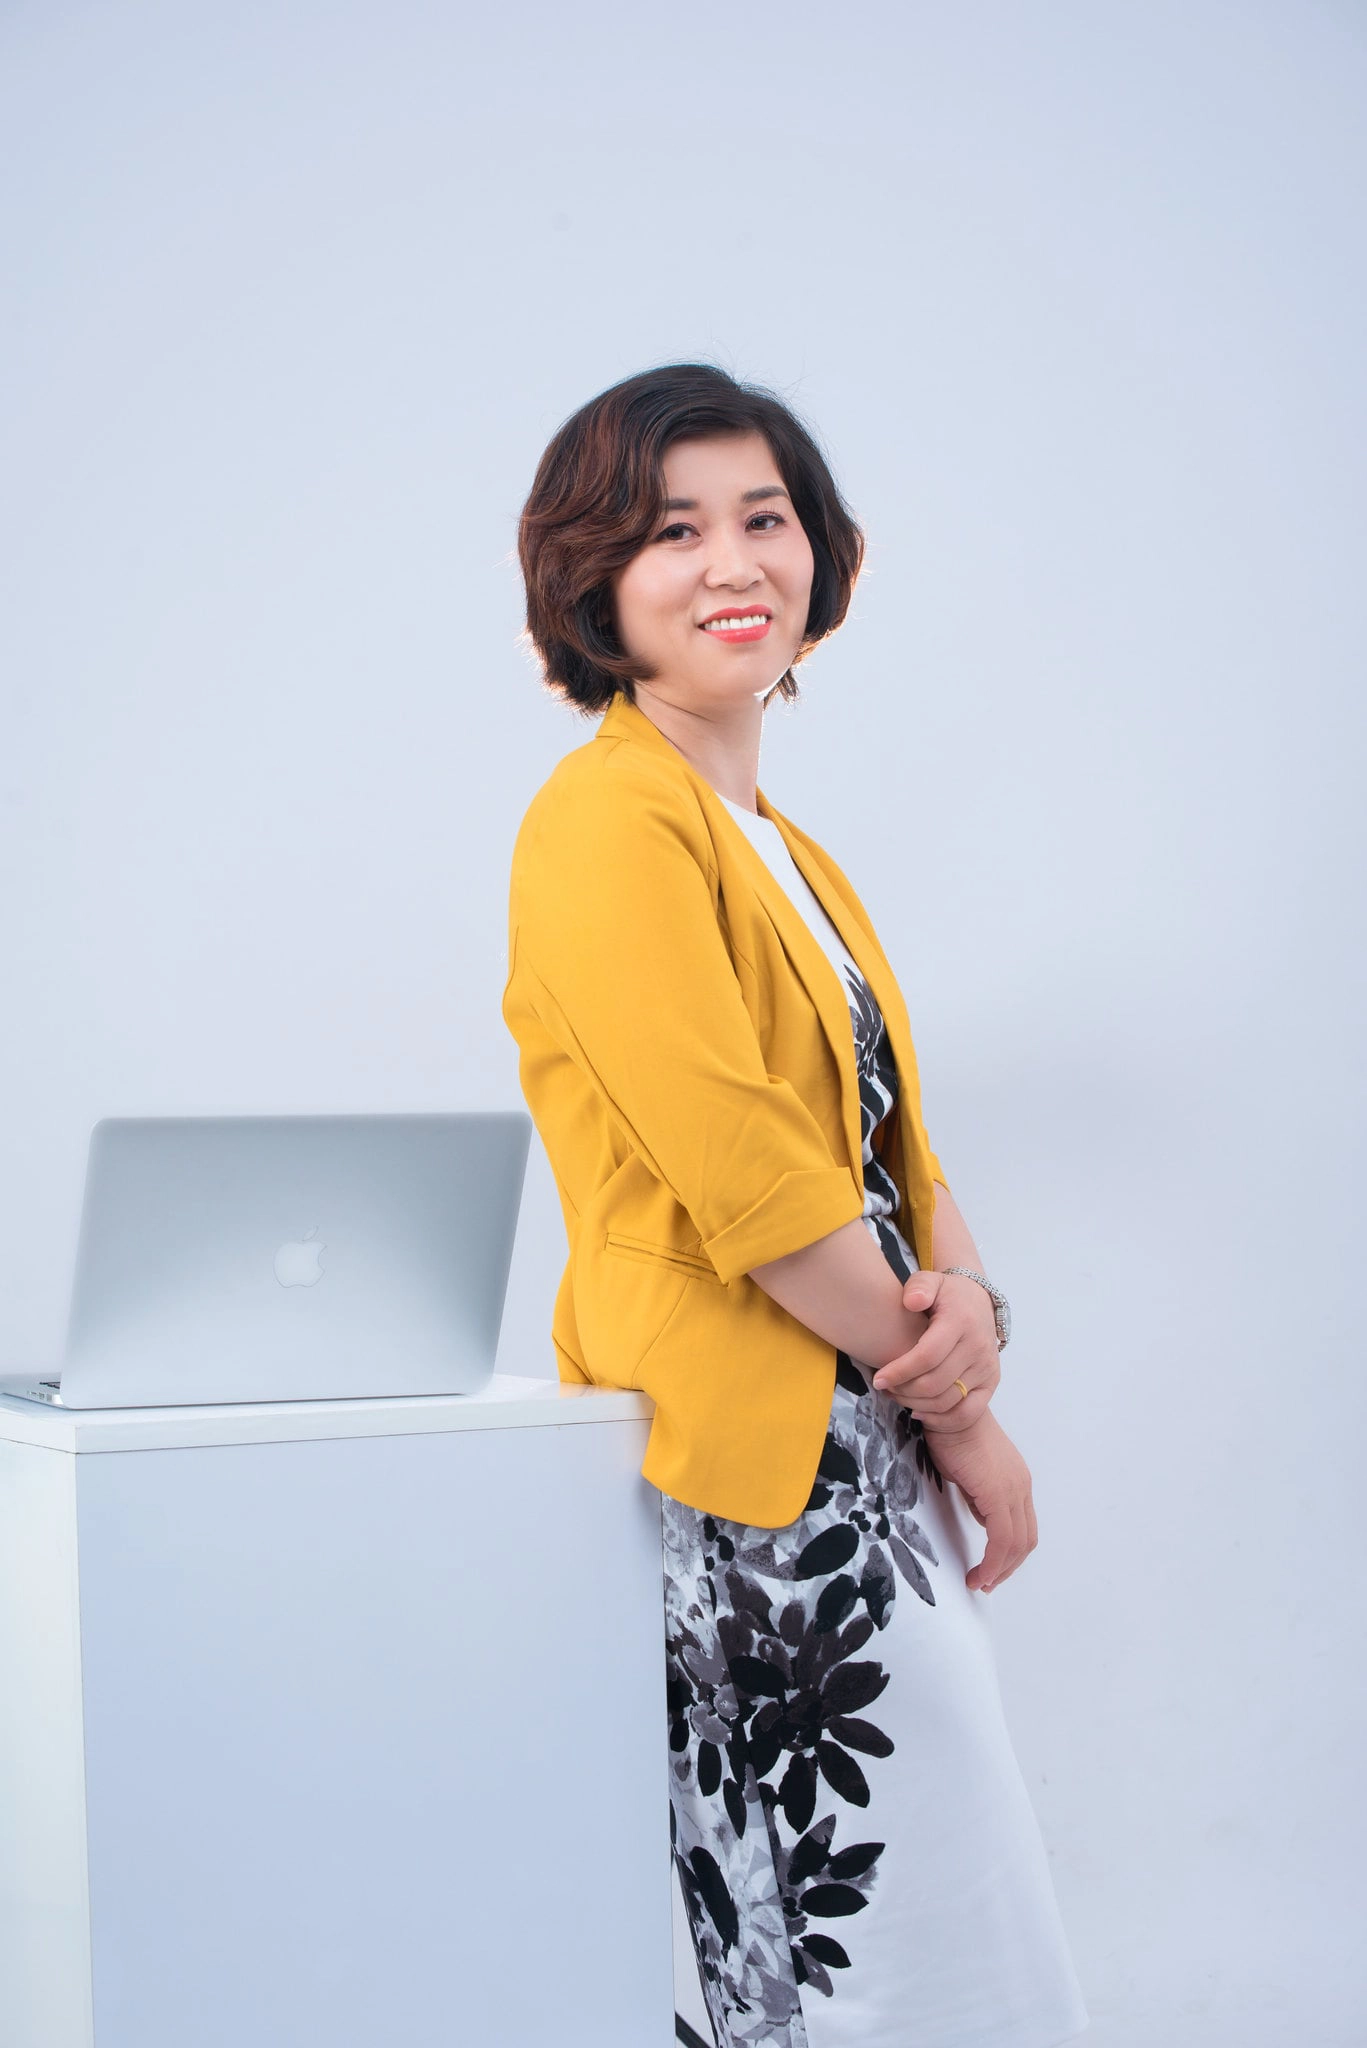 chan dung nu 11 - 35 cách tạo dáng chụp ảnh doanh nhân chuyên nghiệp - HThao Studio